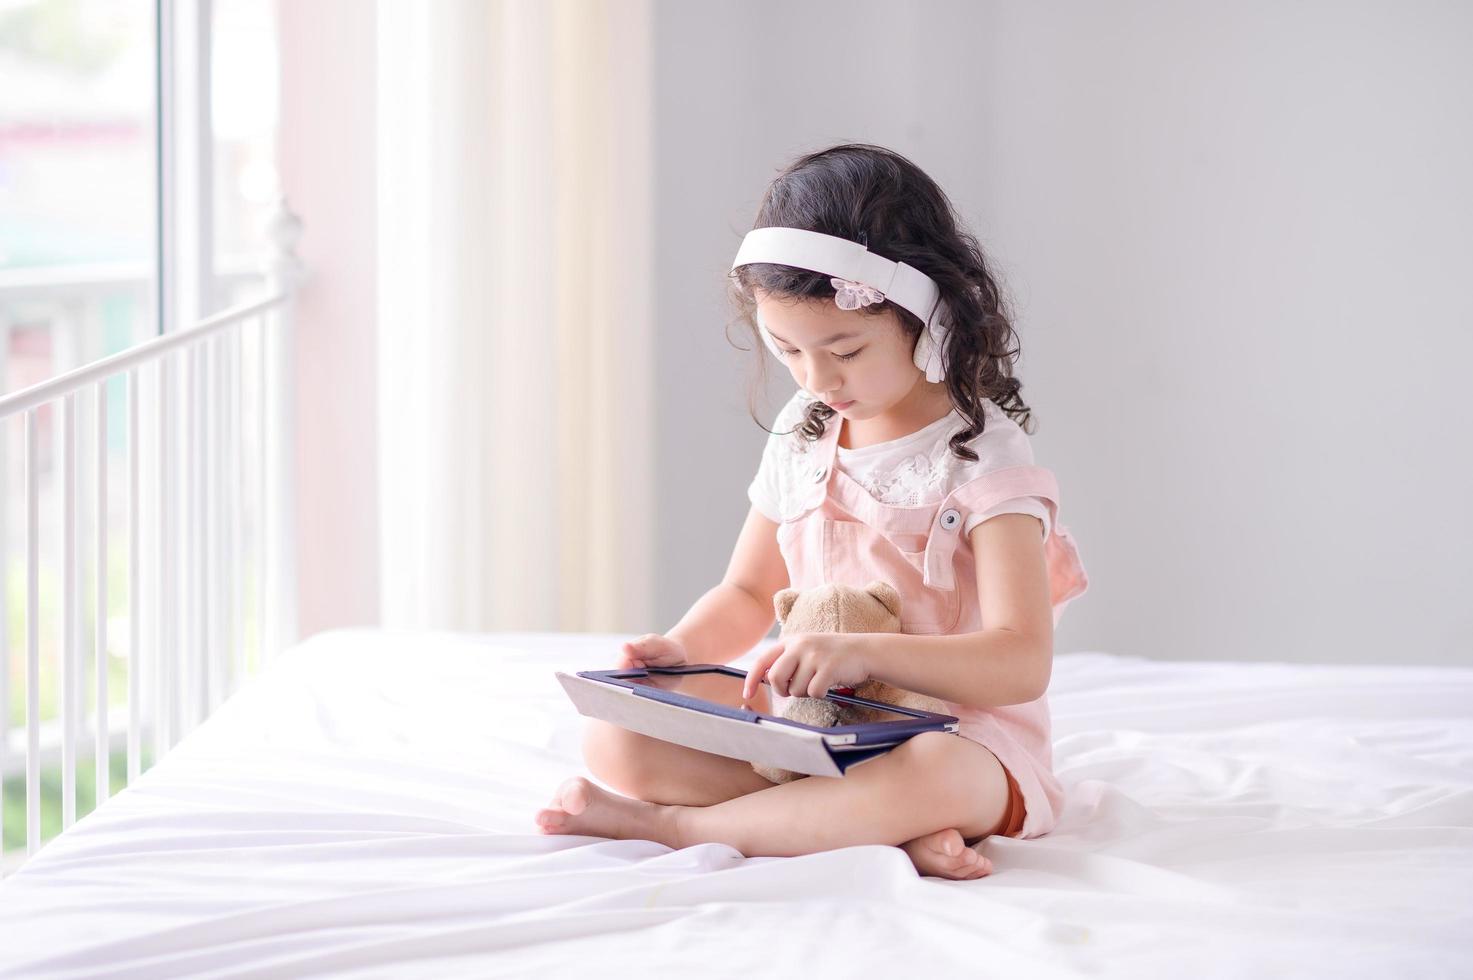 una linda chica asiática está usando una tableta para divertirse jugando y aprendiendo en la habitación foto